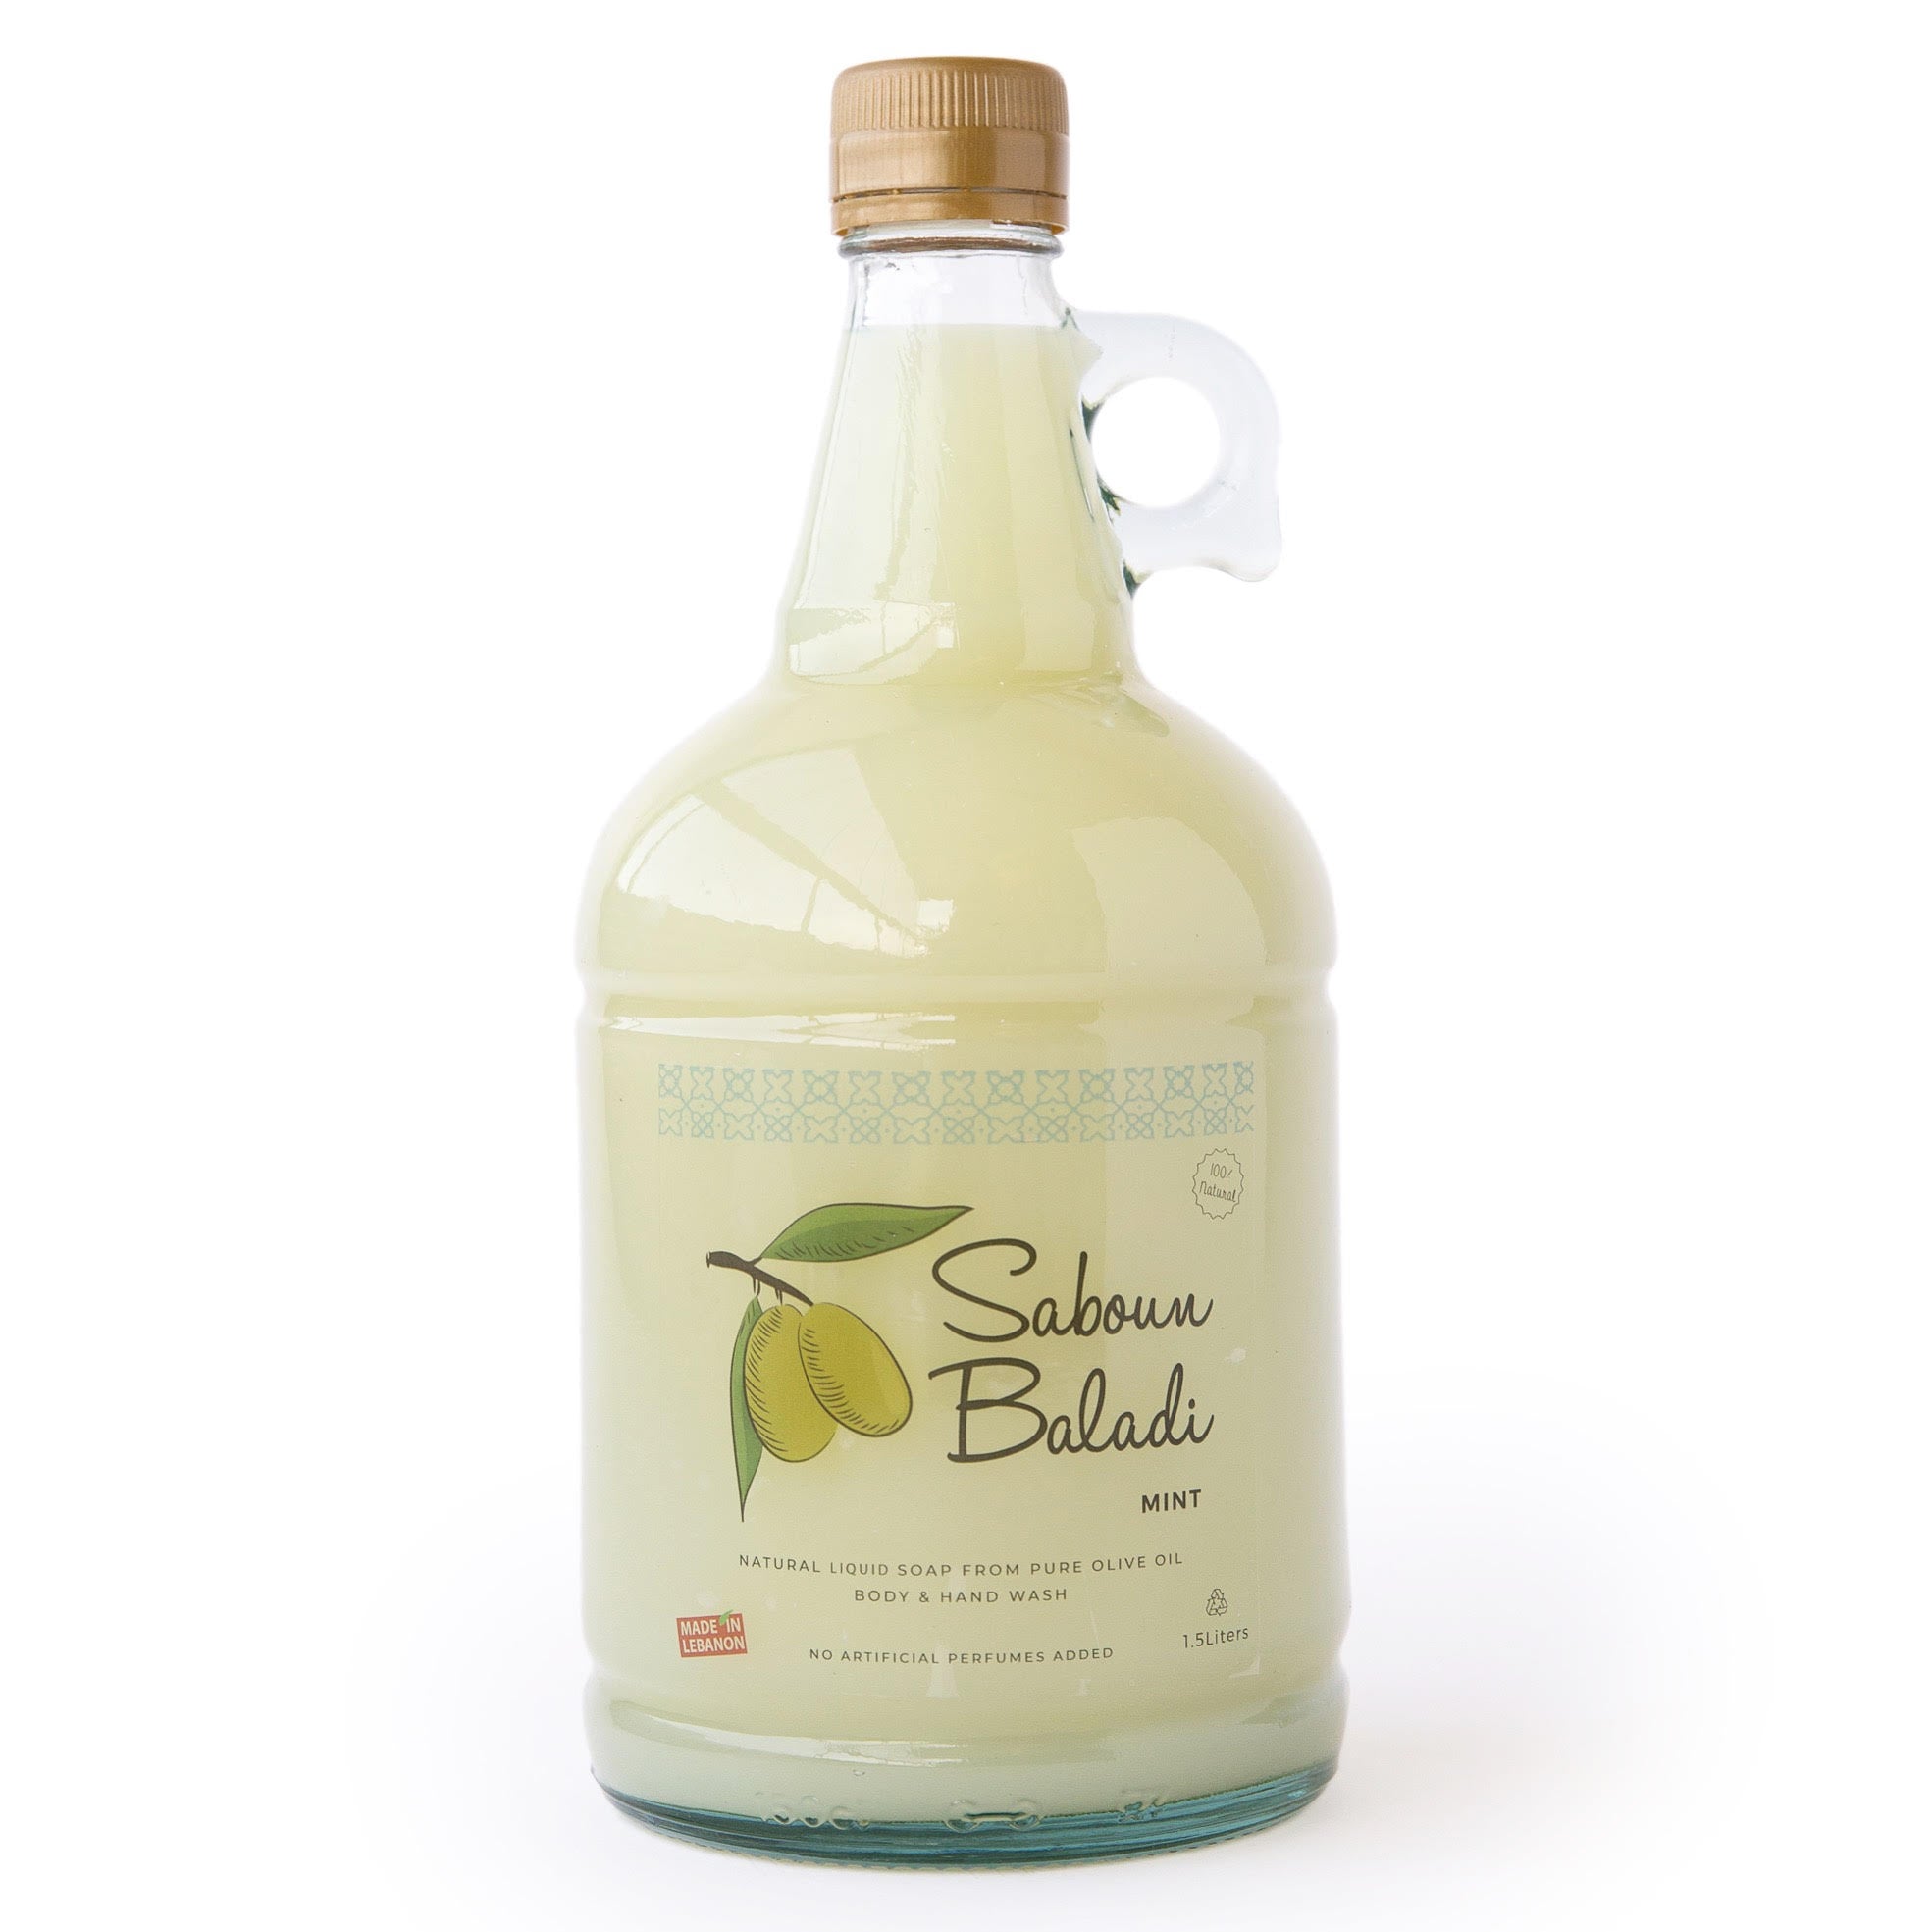 Saboun Baladi Traditional Liquid Soap – Mint 1.5L